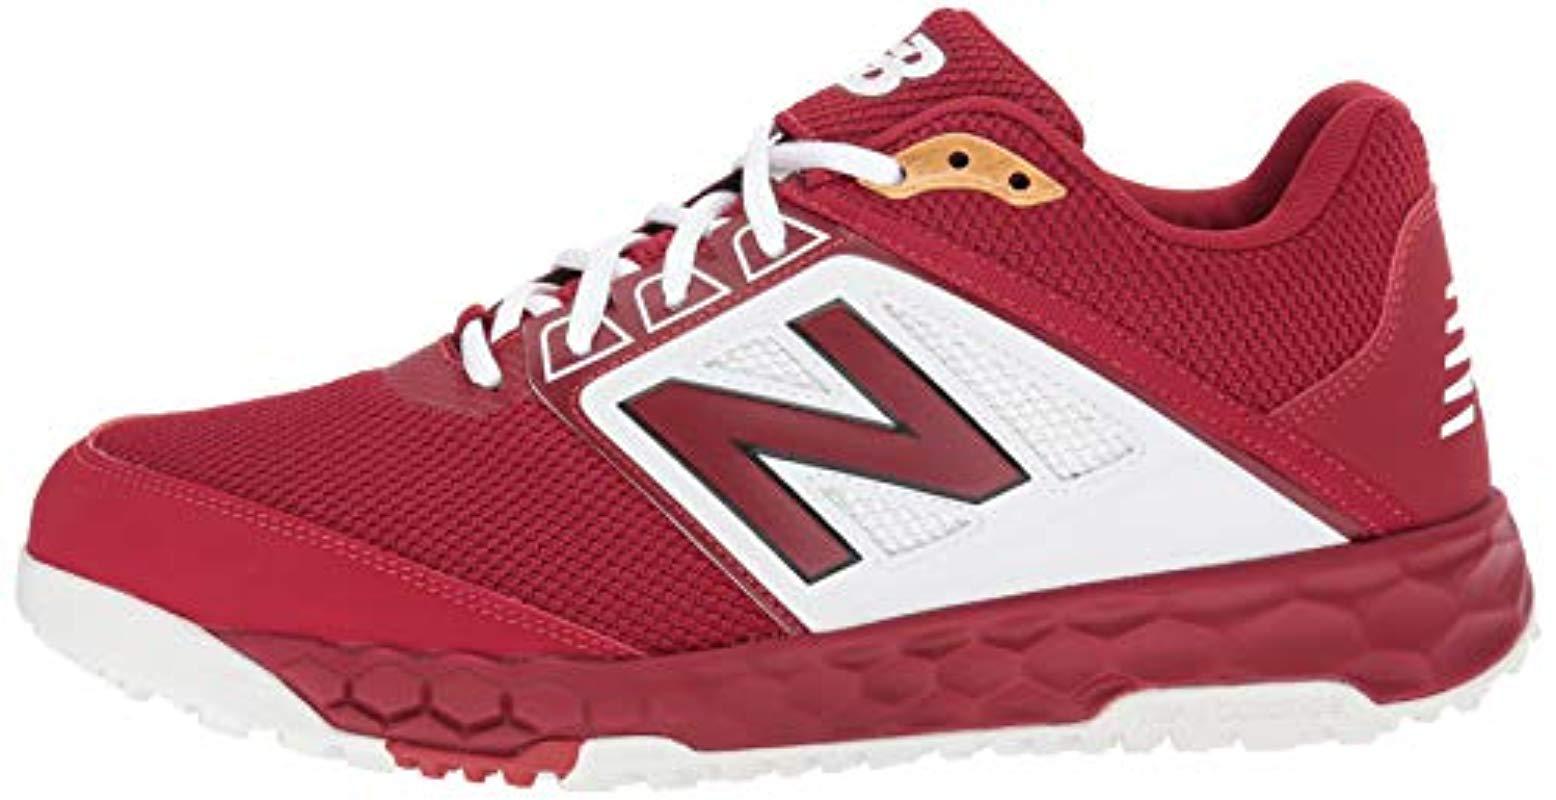 New Balance Rubber 3000 V4 Turf Baseball Shoe in Red/White (Red) for Men |  Lyst